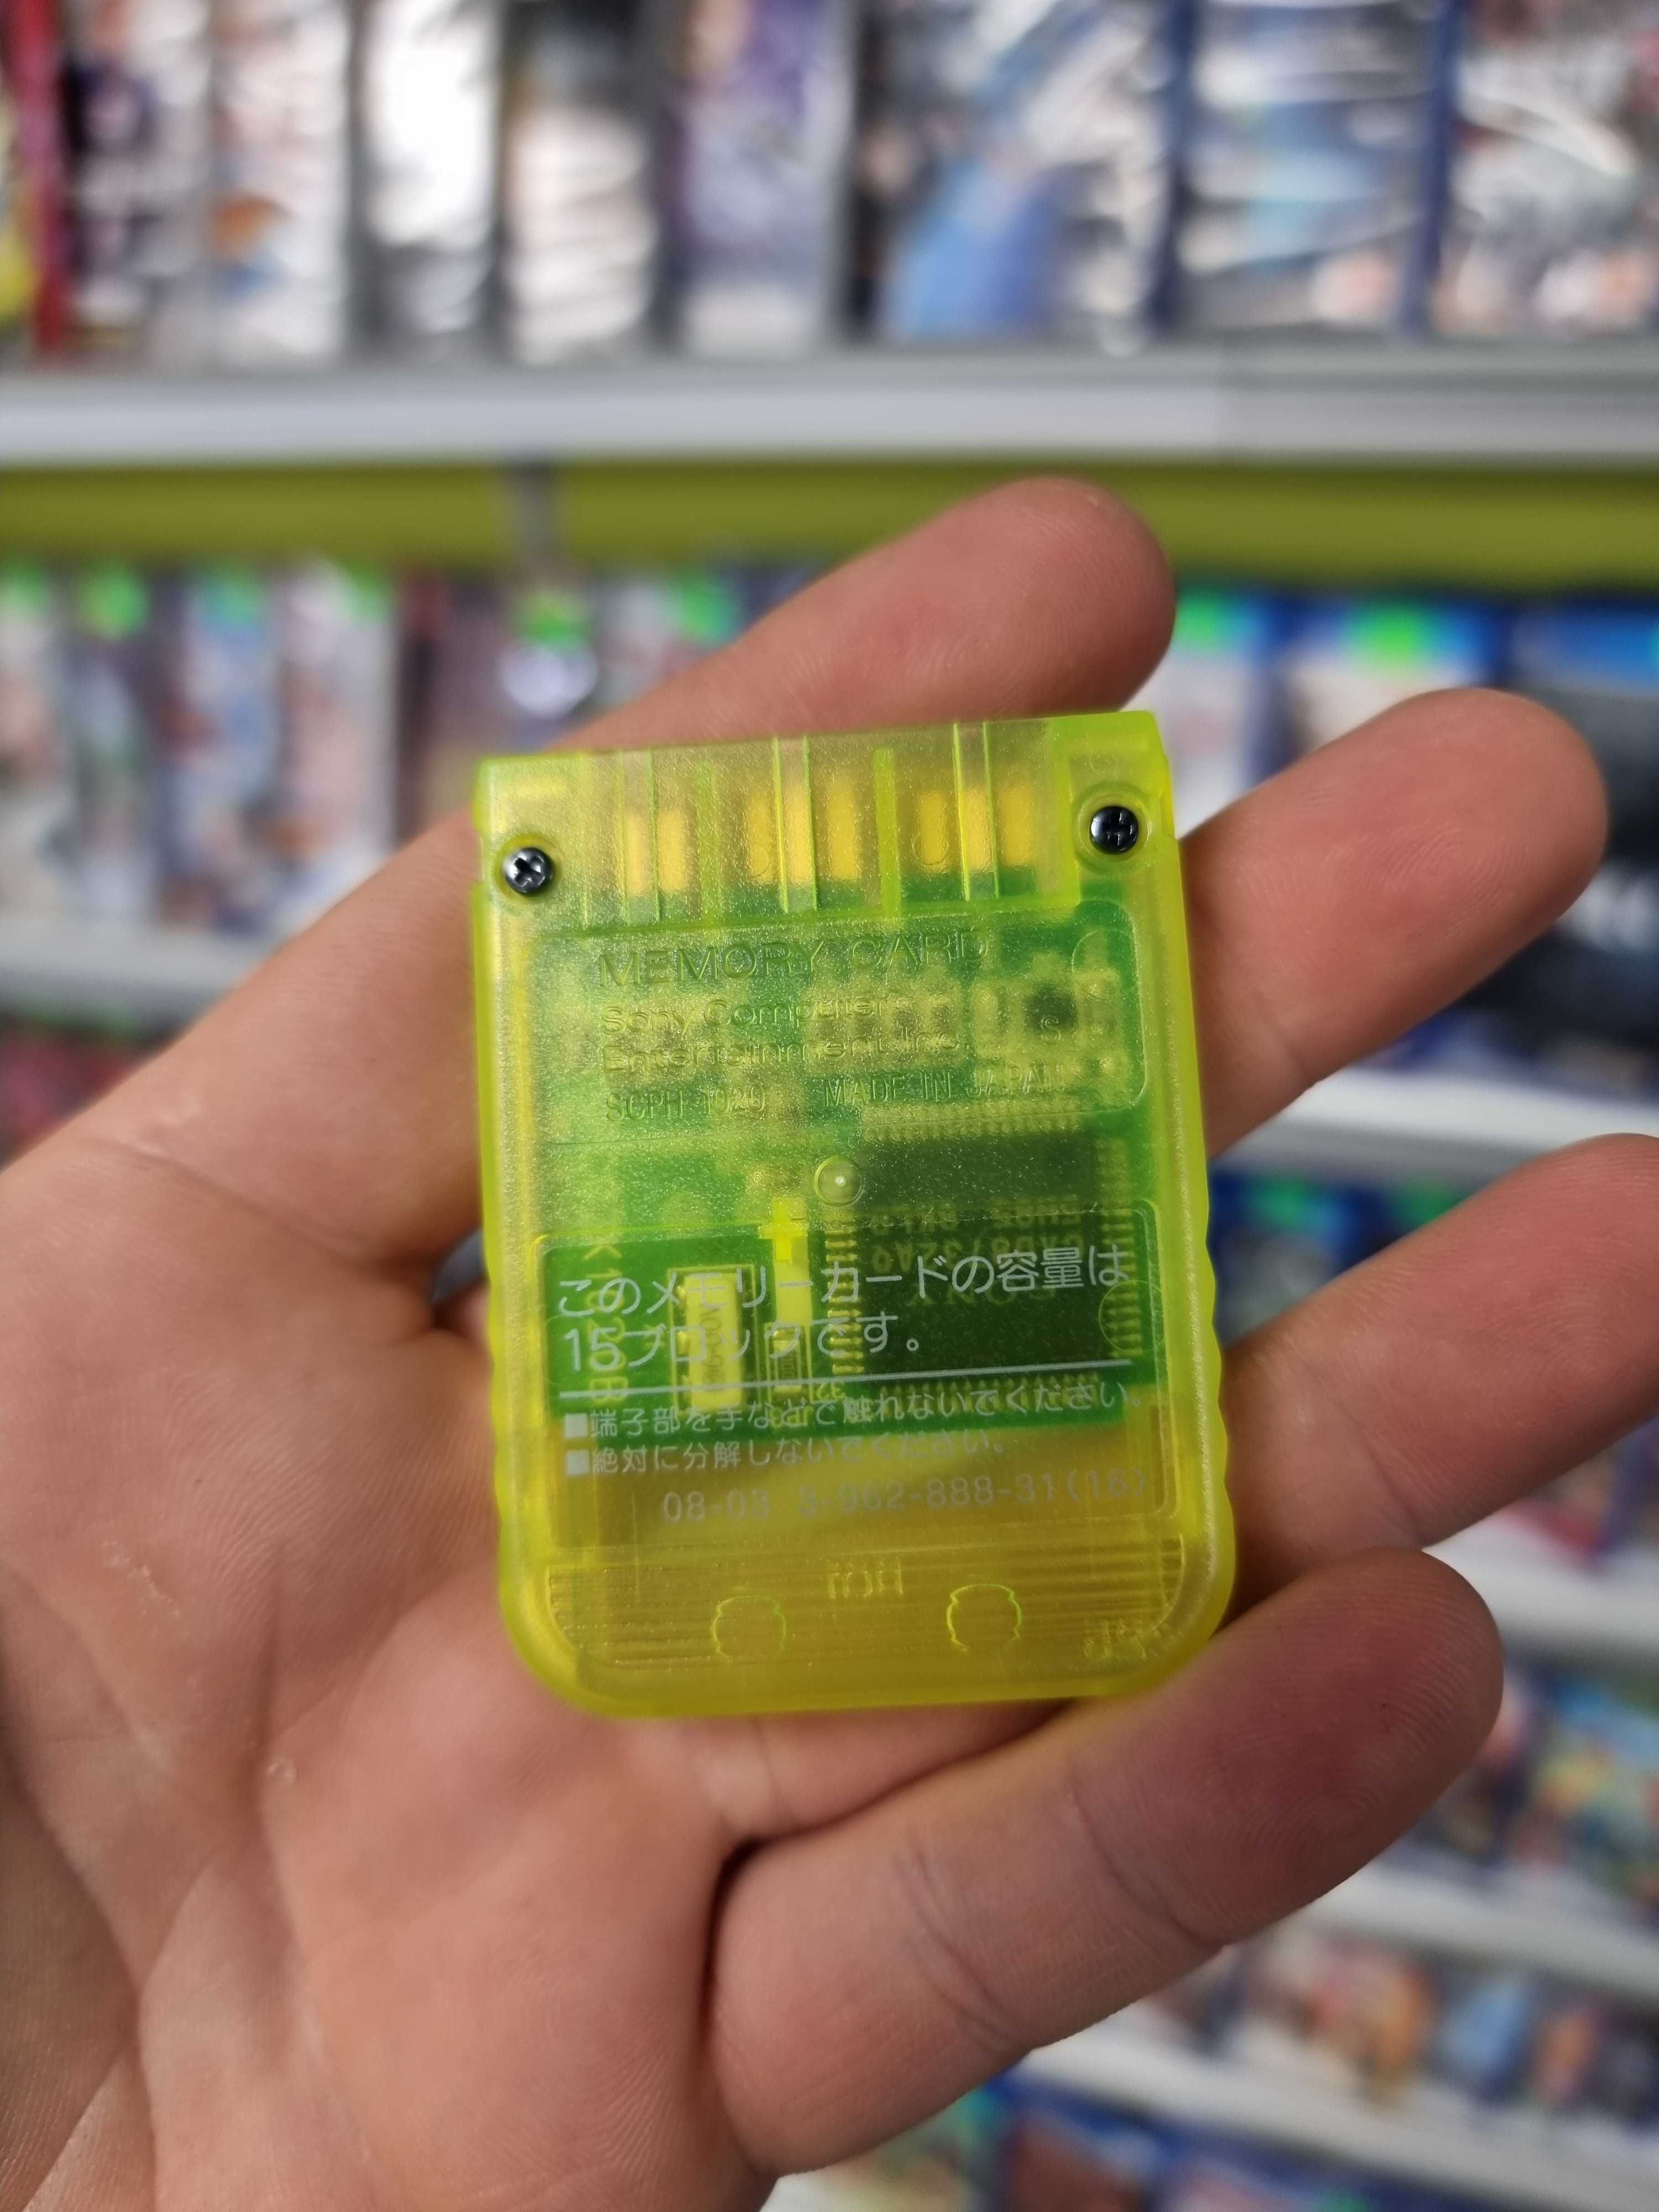 Oryginalna karta pamięci Playstation PSX PS1 Lemon Żółta JAPONIA